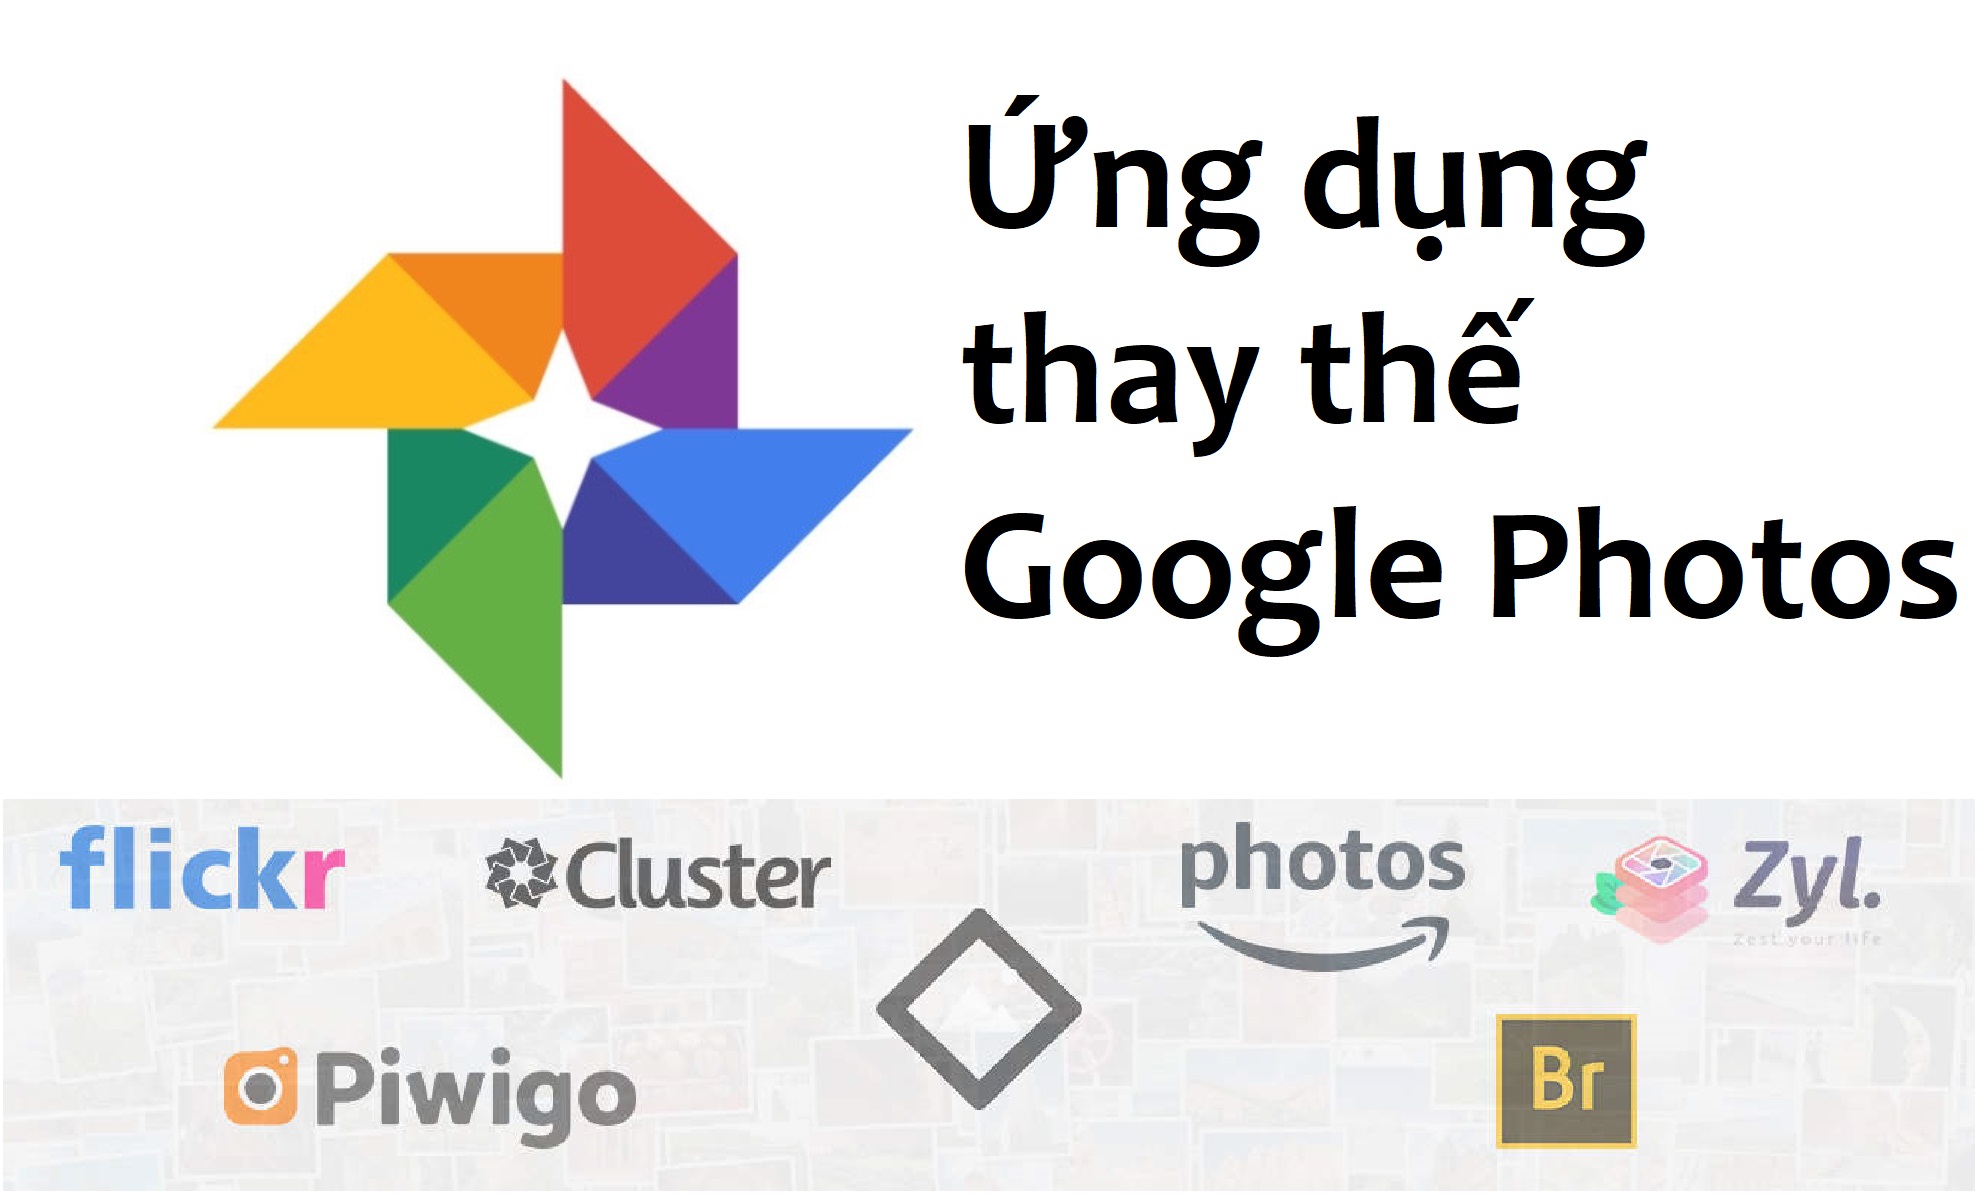 Use the google photos instead